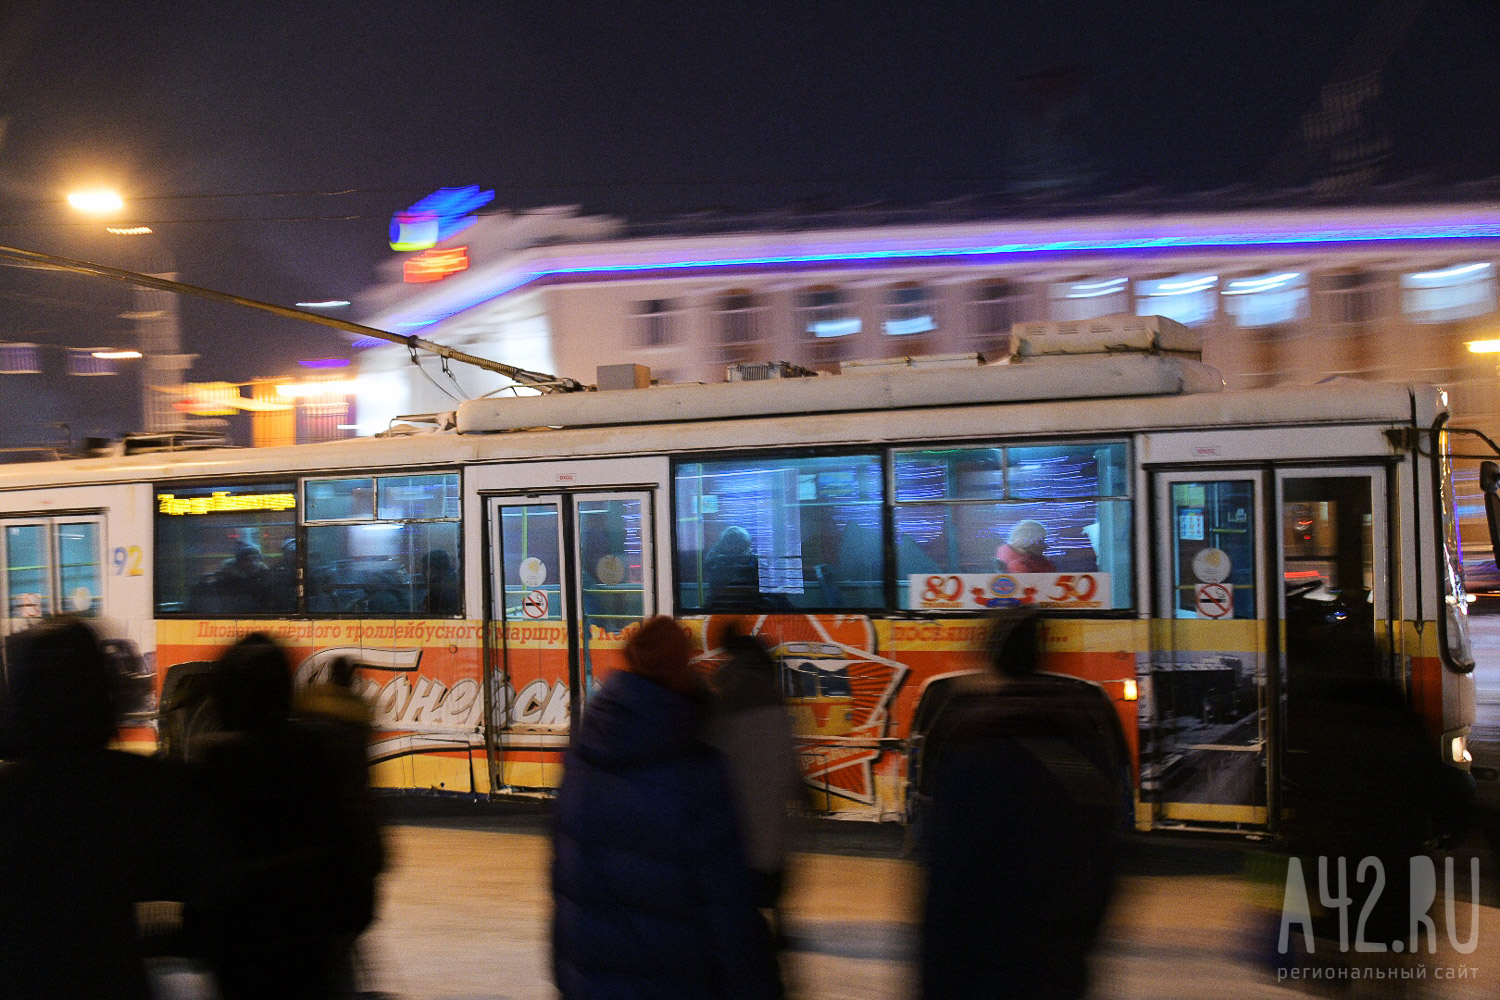 Кемеровчанин пожаловался на невыполнение рейсов троллейбуса по расписанию: комментарий мэрии